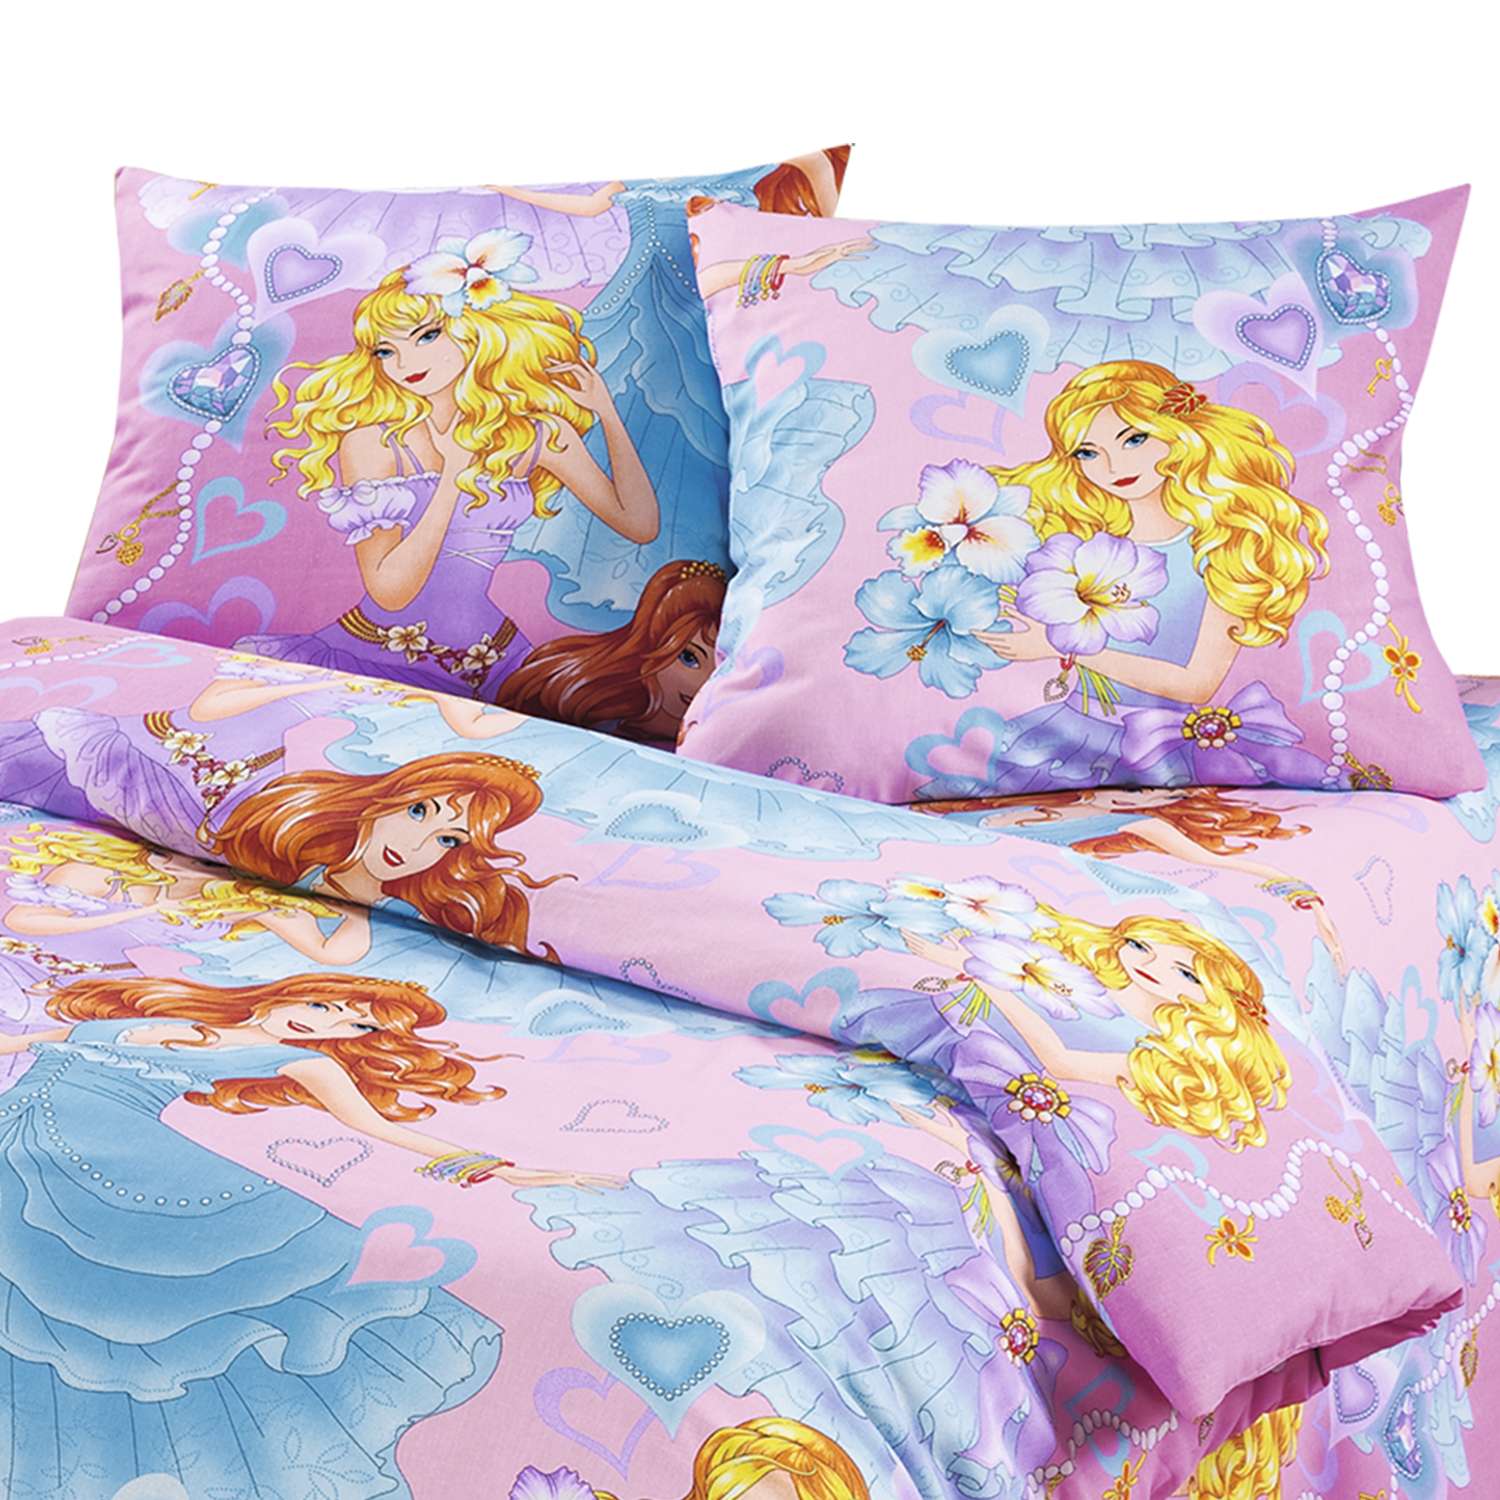 Комплект постельного белья MILANIKA Принцесса 3 предмета 1.5 спальный - фото 2